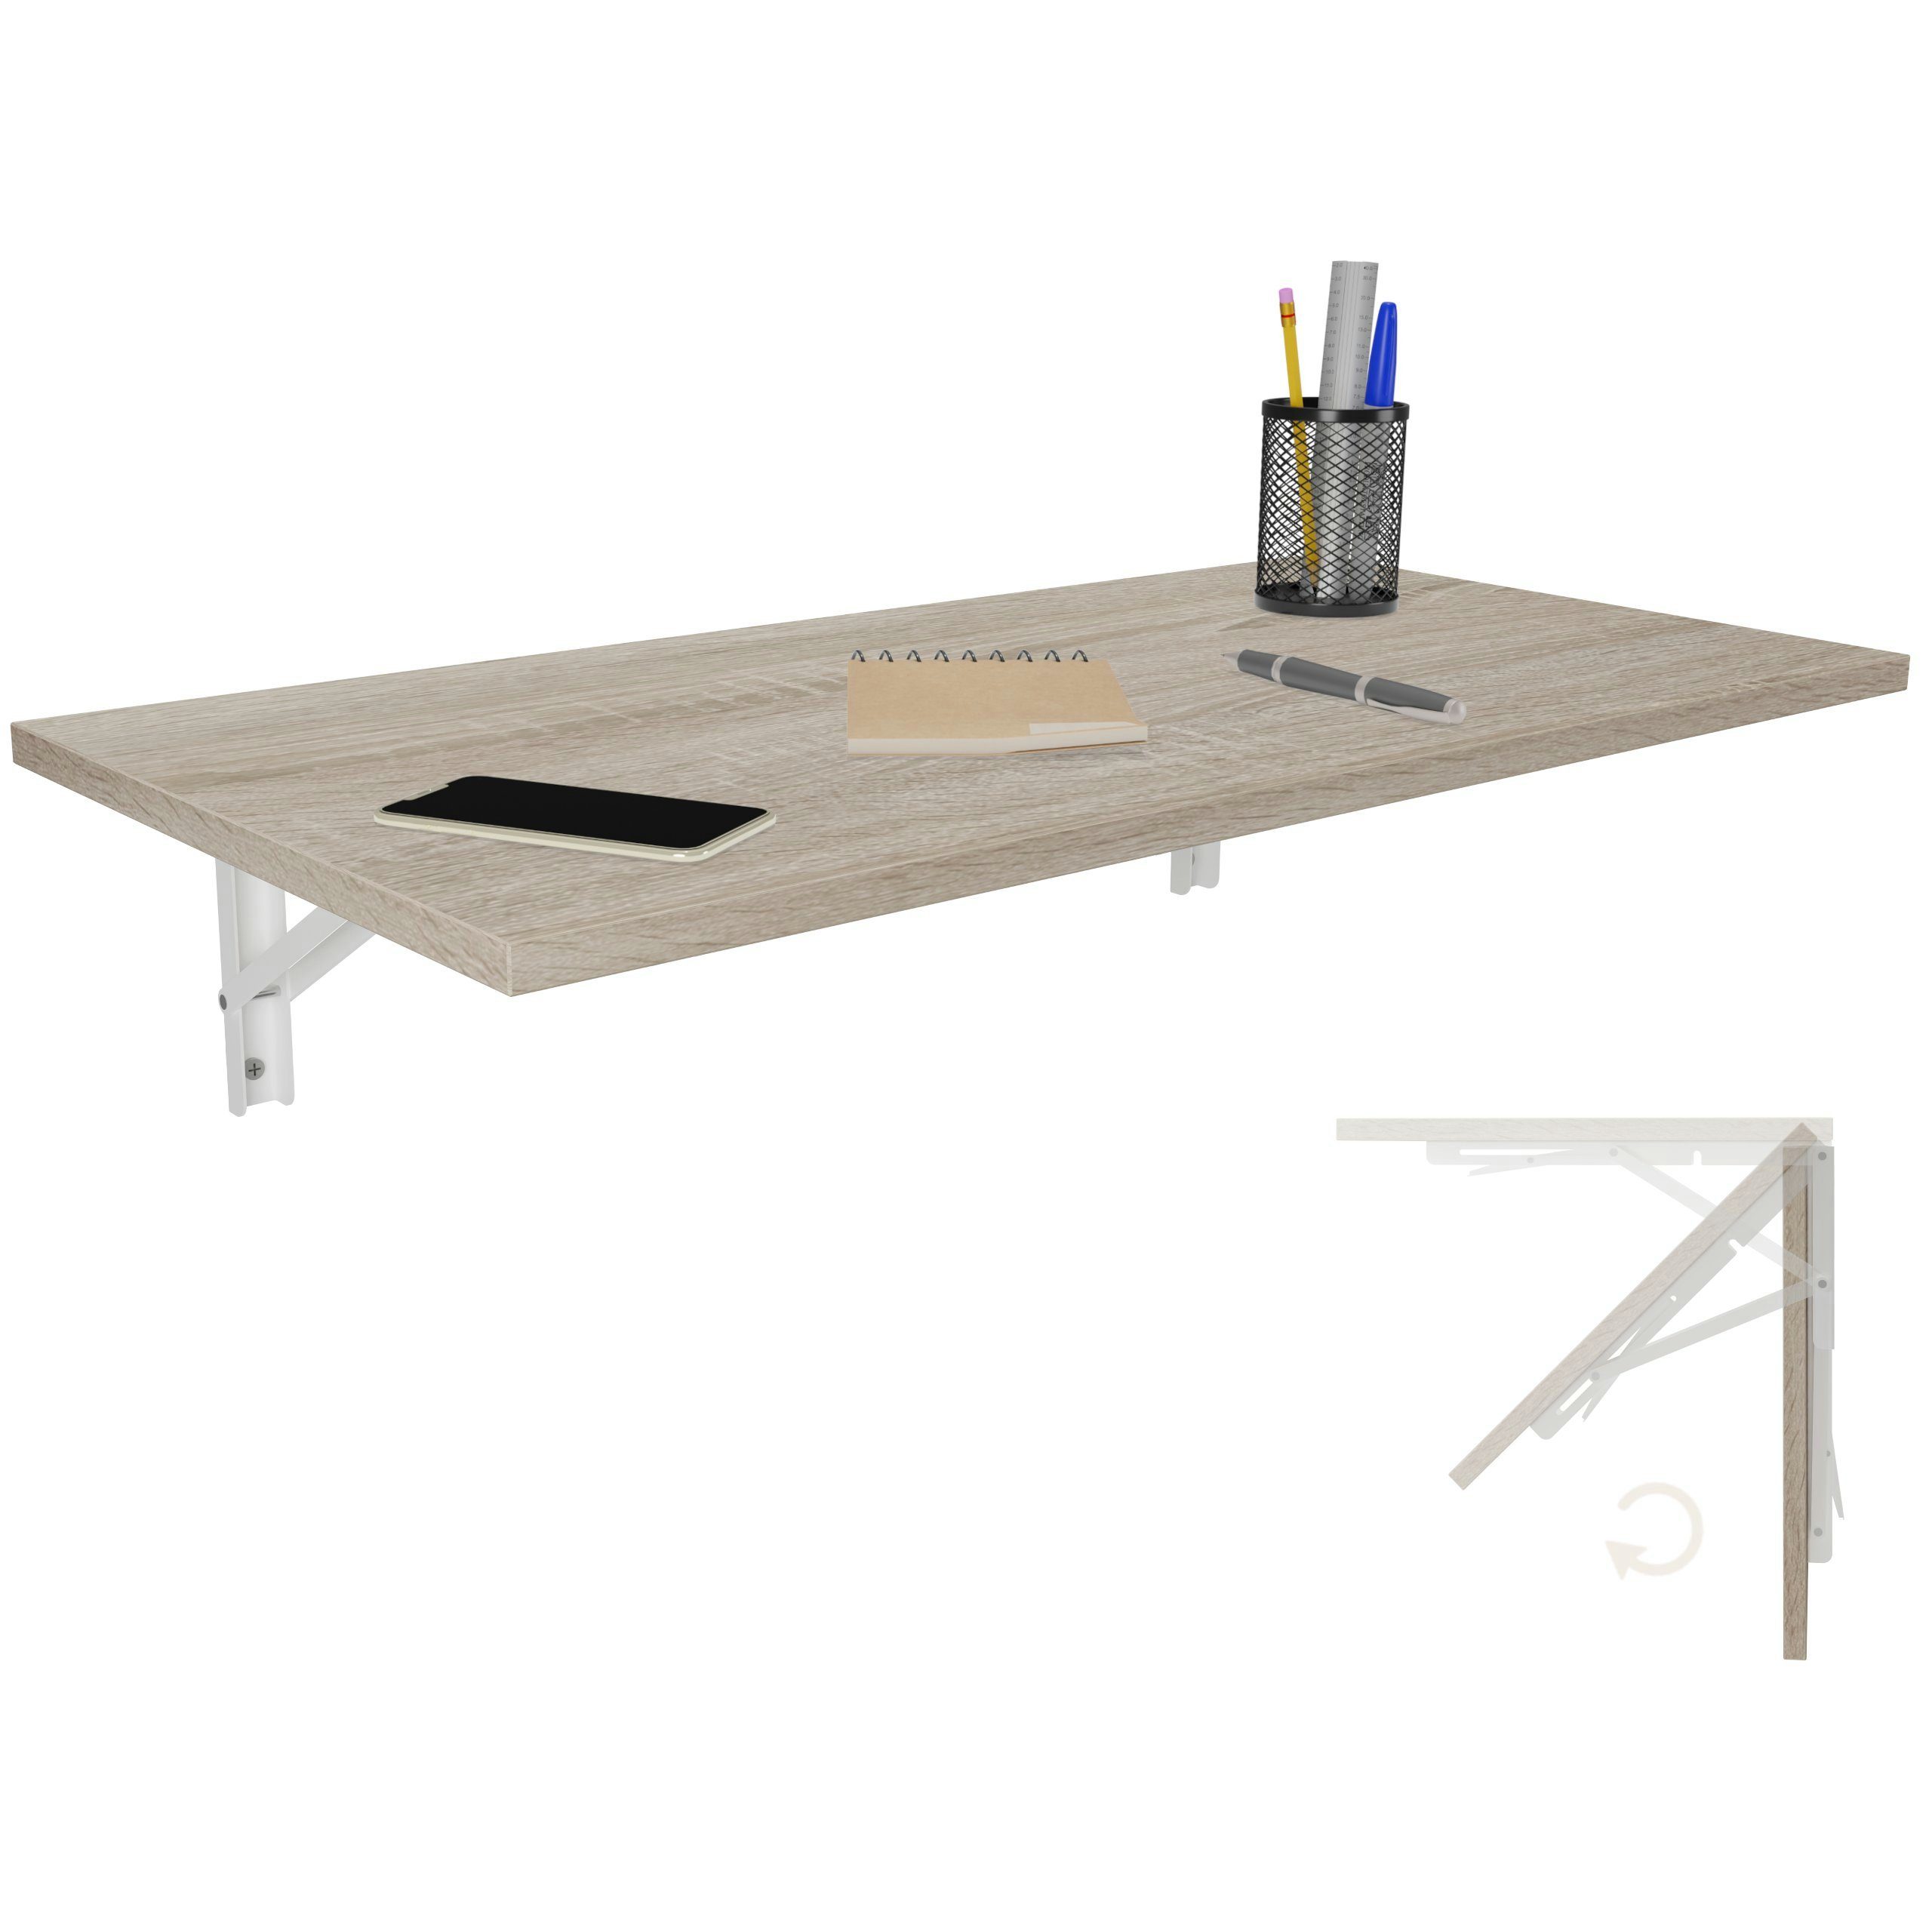 KDR Produktgestaltung Esstisch 80x40 Sonoma Schreibtisch Küchentisch Tisch, Wand Klapptisch Eiche Wandklapptisch